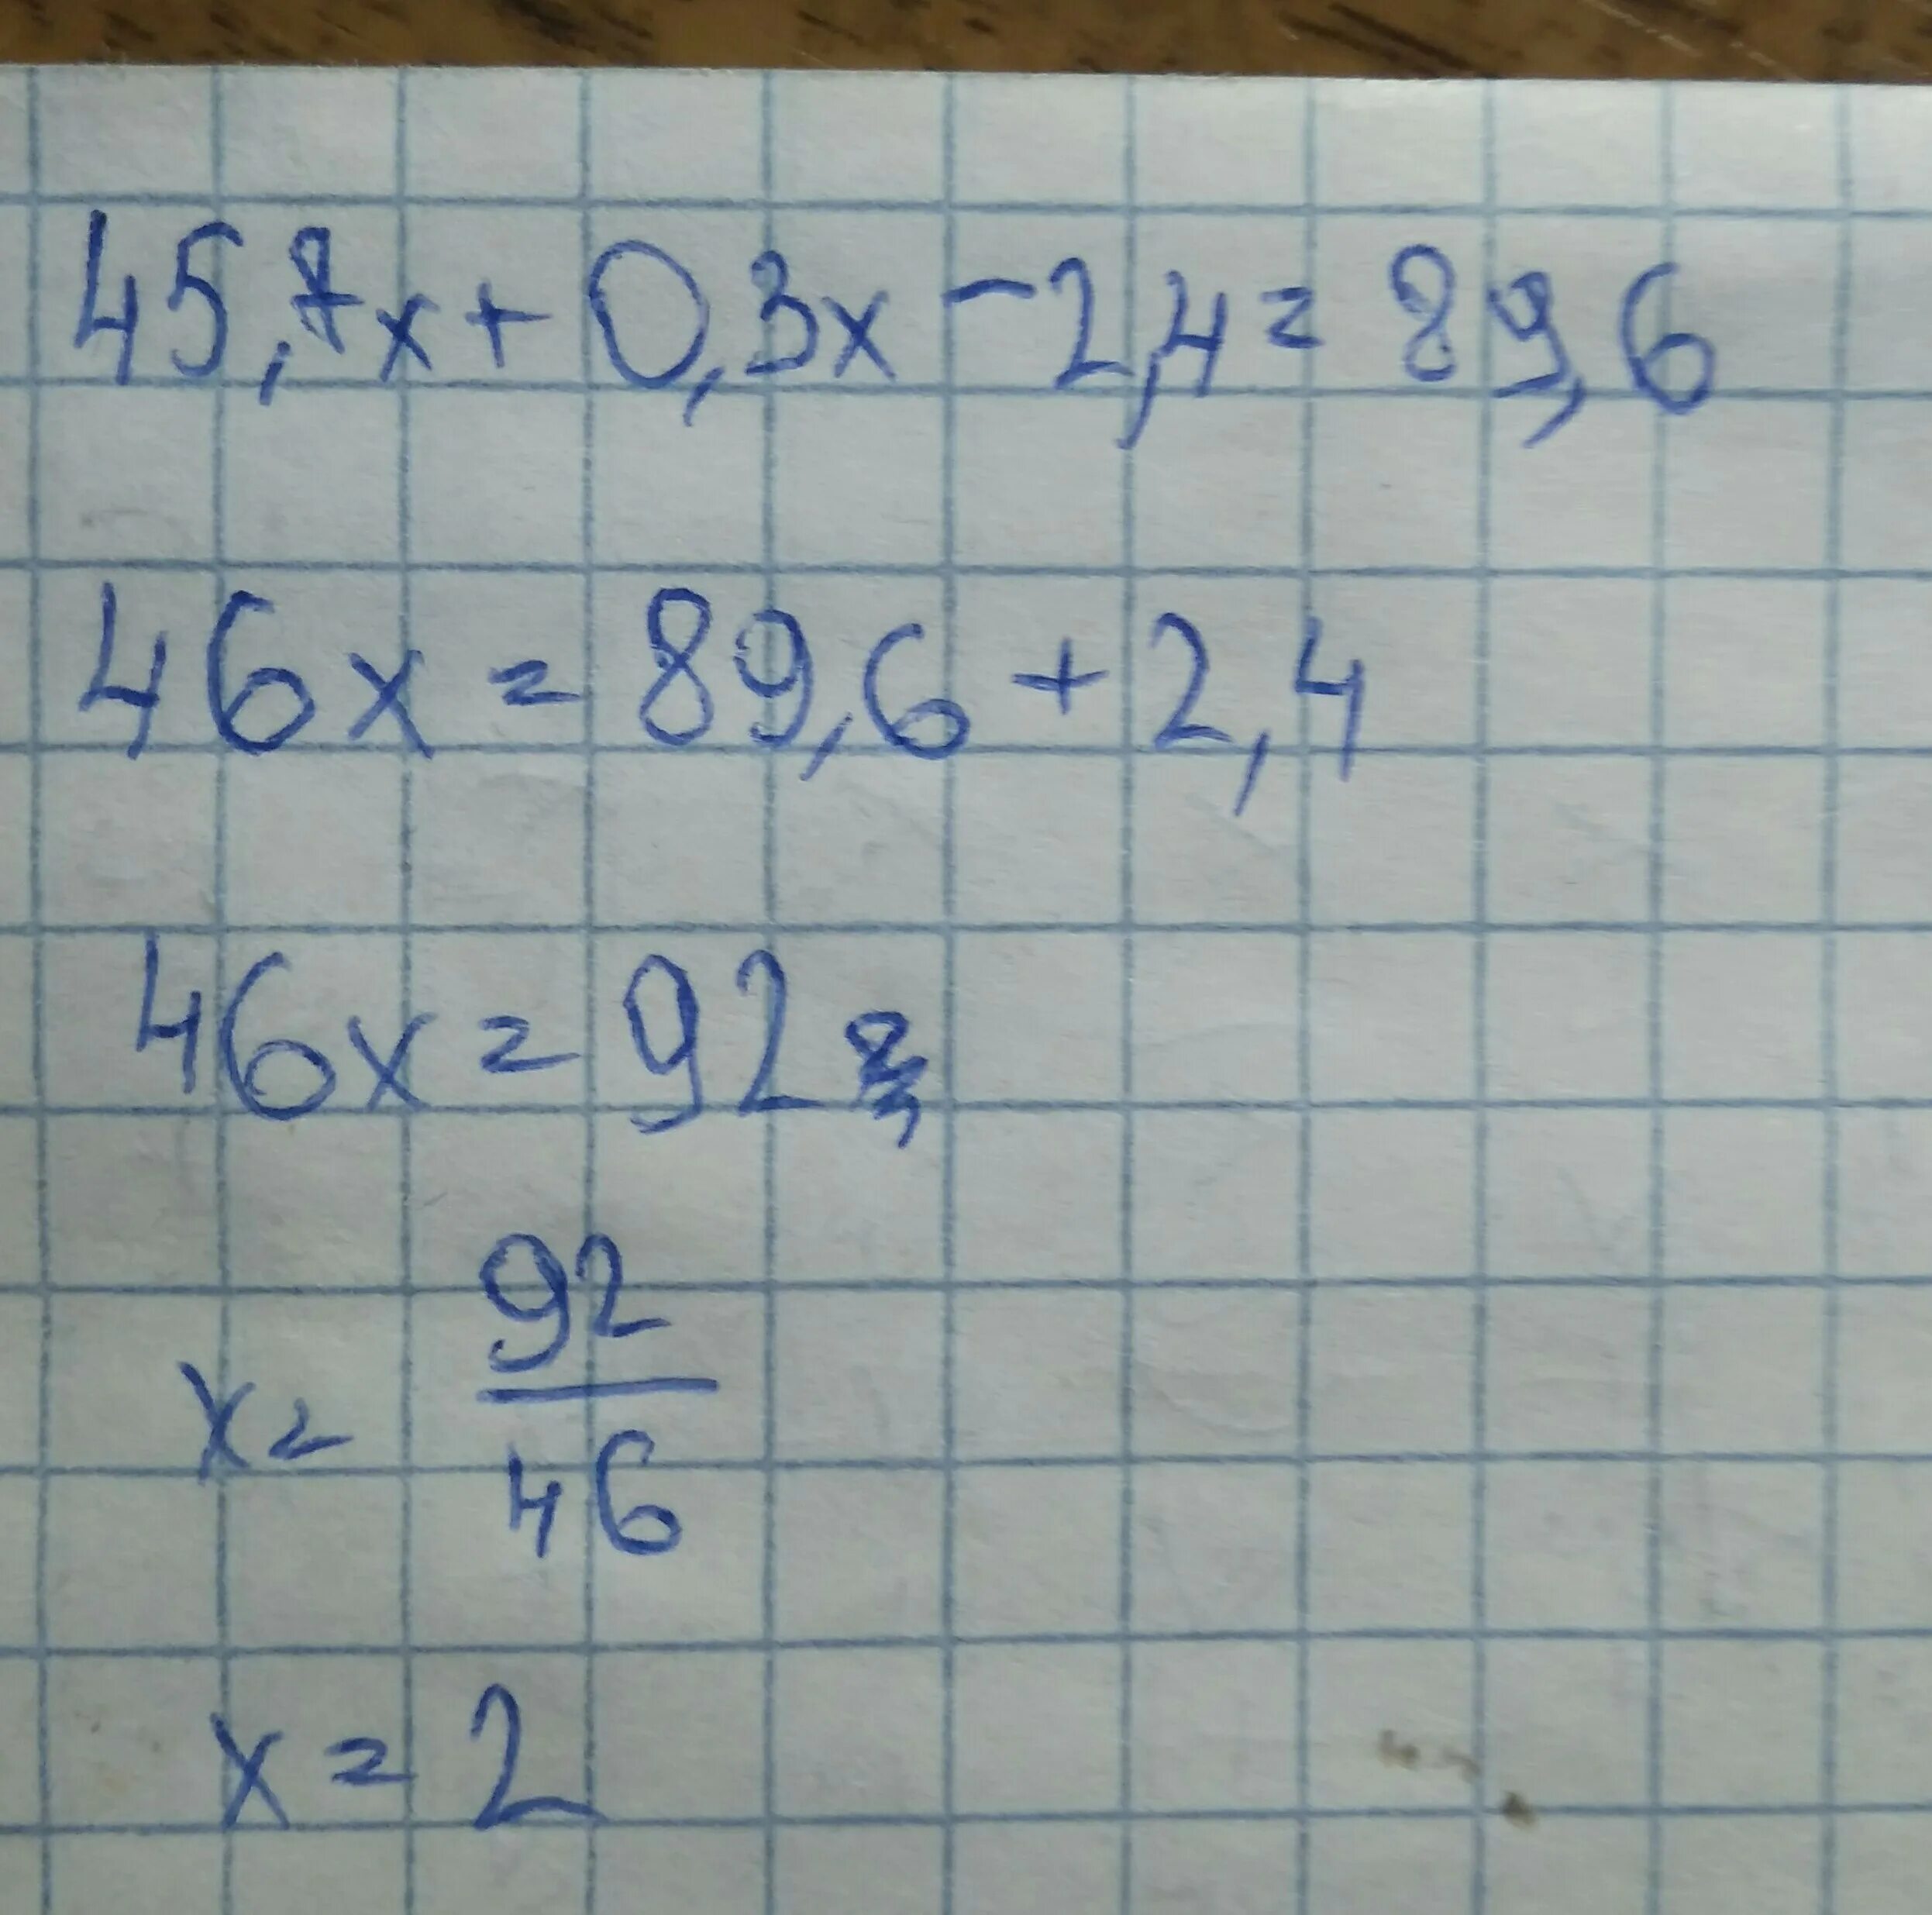 3х 3x 7 3x 1 2. 45.7Х+0.3Х-2.4 89.6 решение. Решите уравнение 45.7х+0.3х-2.4 89.6. 45 7х+0.3-2.4 89.6. 45 7х 0 3х-2 4 89 6.